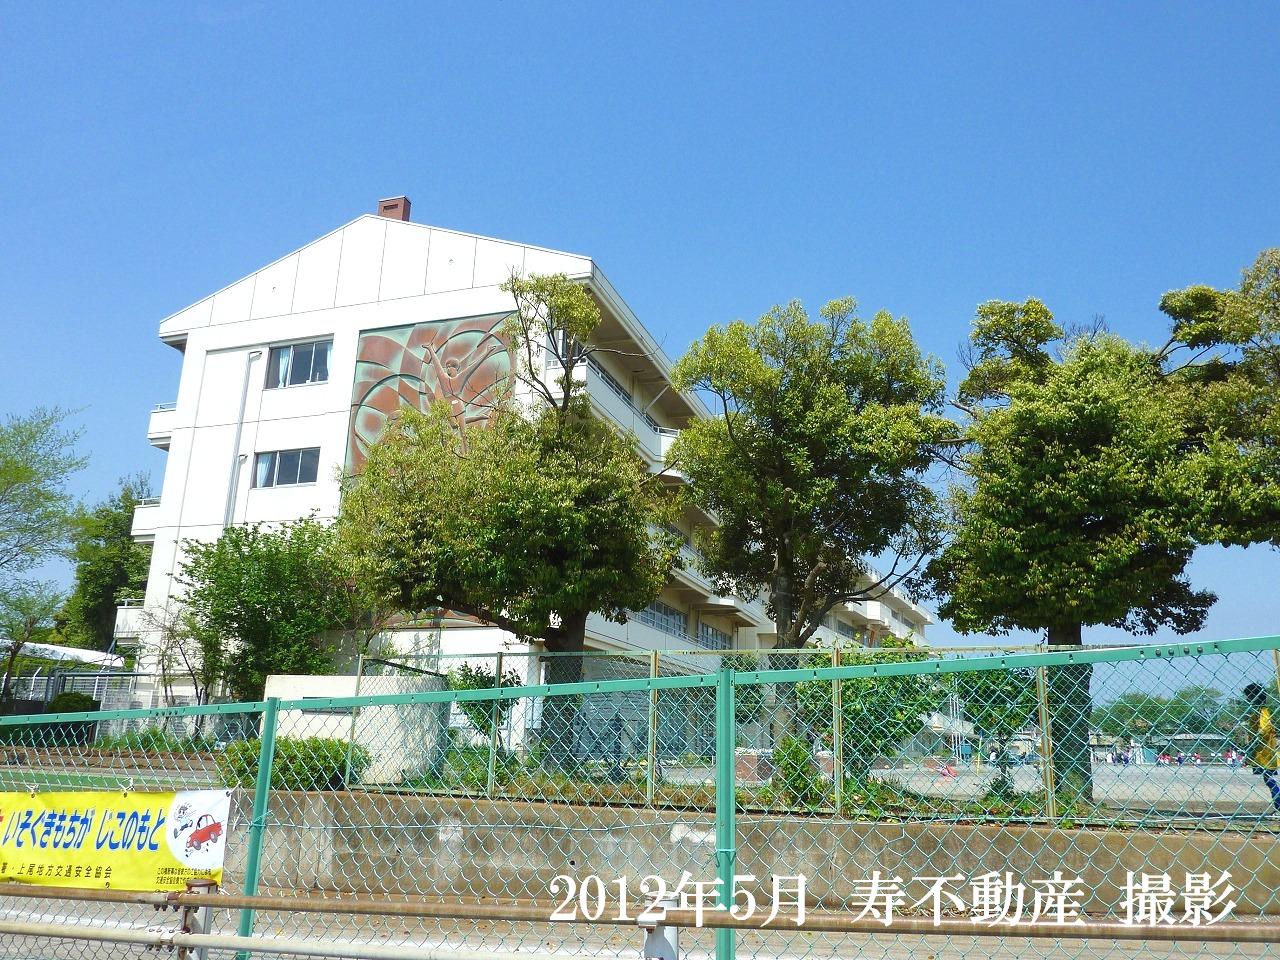 Primary school. 961m to Ageo Municipal Oishikita elementary school (elementary school)